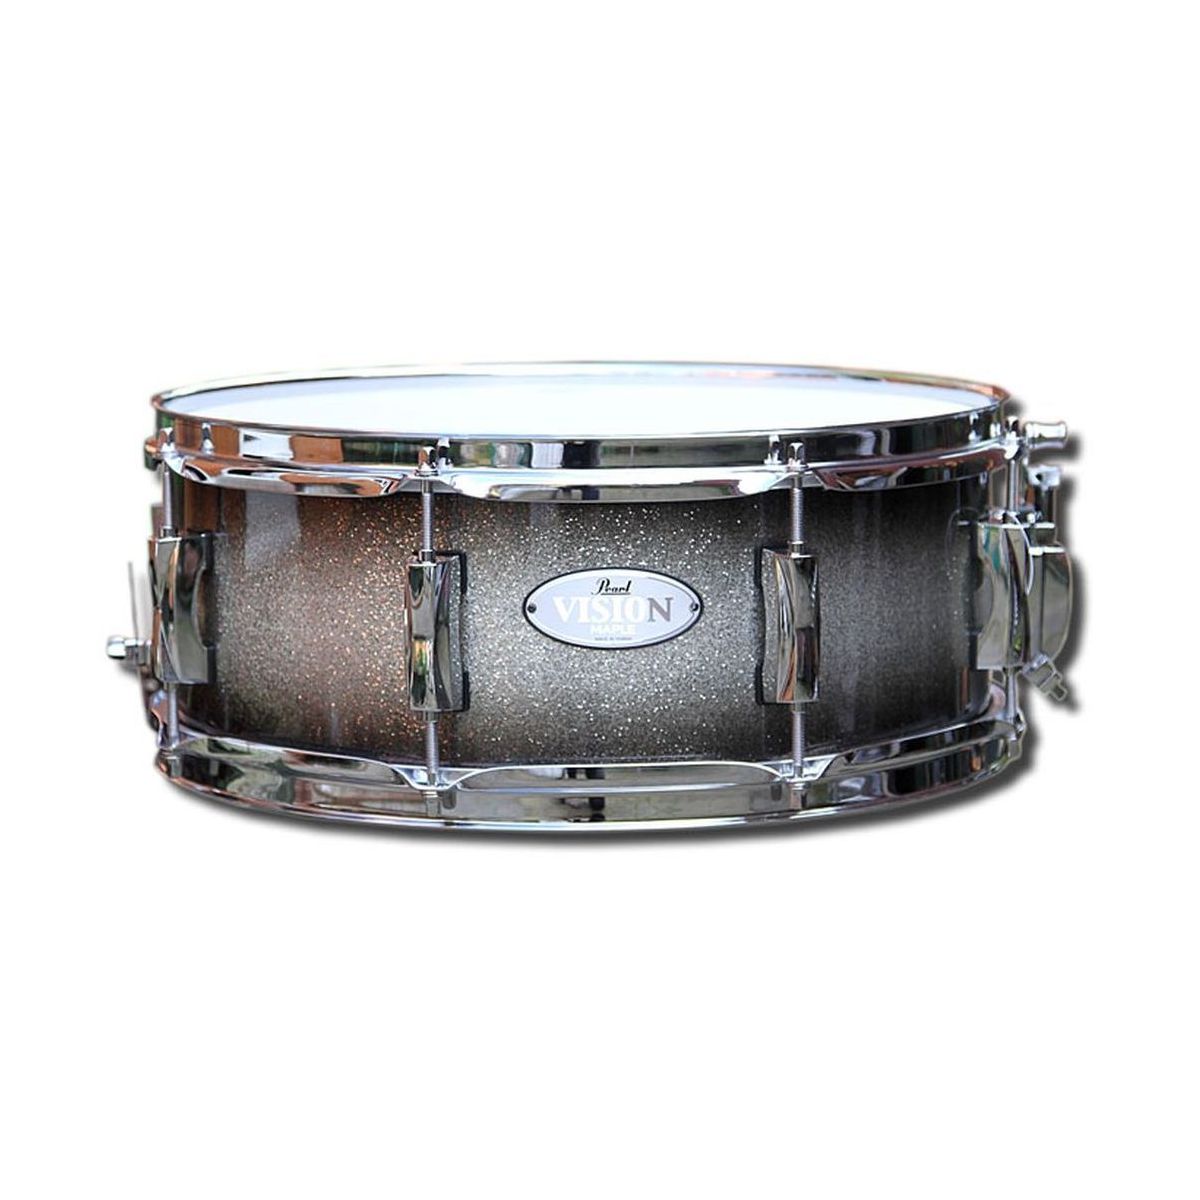 Pearl VML1455S/ C368 малый барабан Vision VML 14" х 5.5", цвет Black Silver Burst